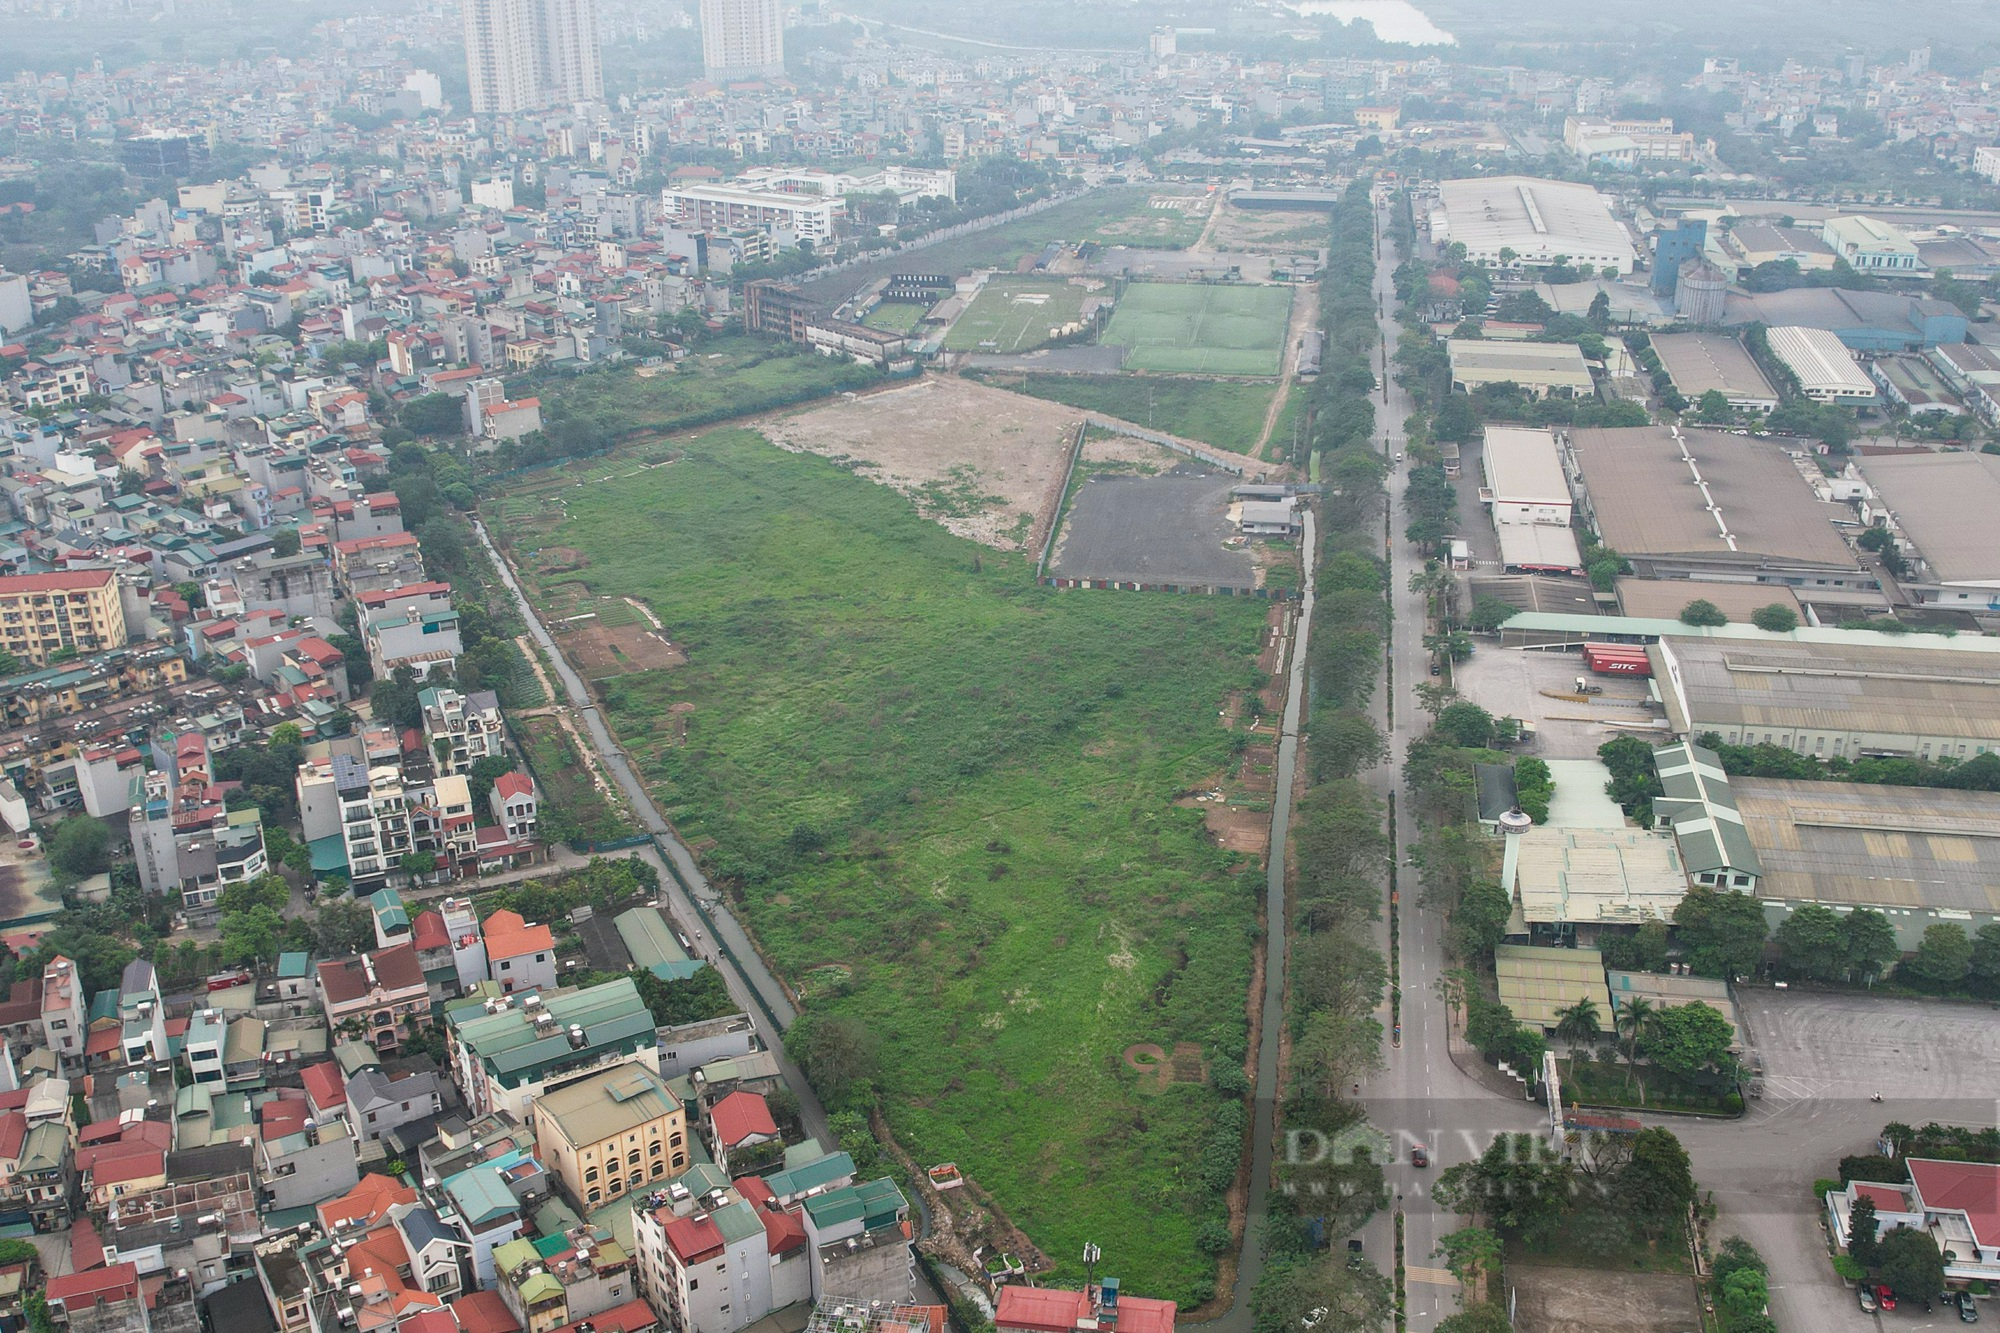 Dự án Khu đô thị rộng 37ha tại Hà Nội thành khu bắn cung, sân bóng, bãi gửi xe... trái phép - Ảnh 2.